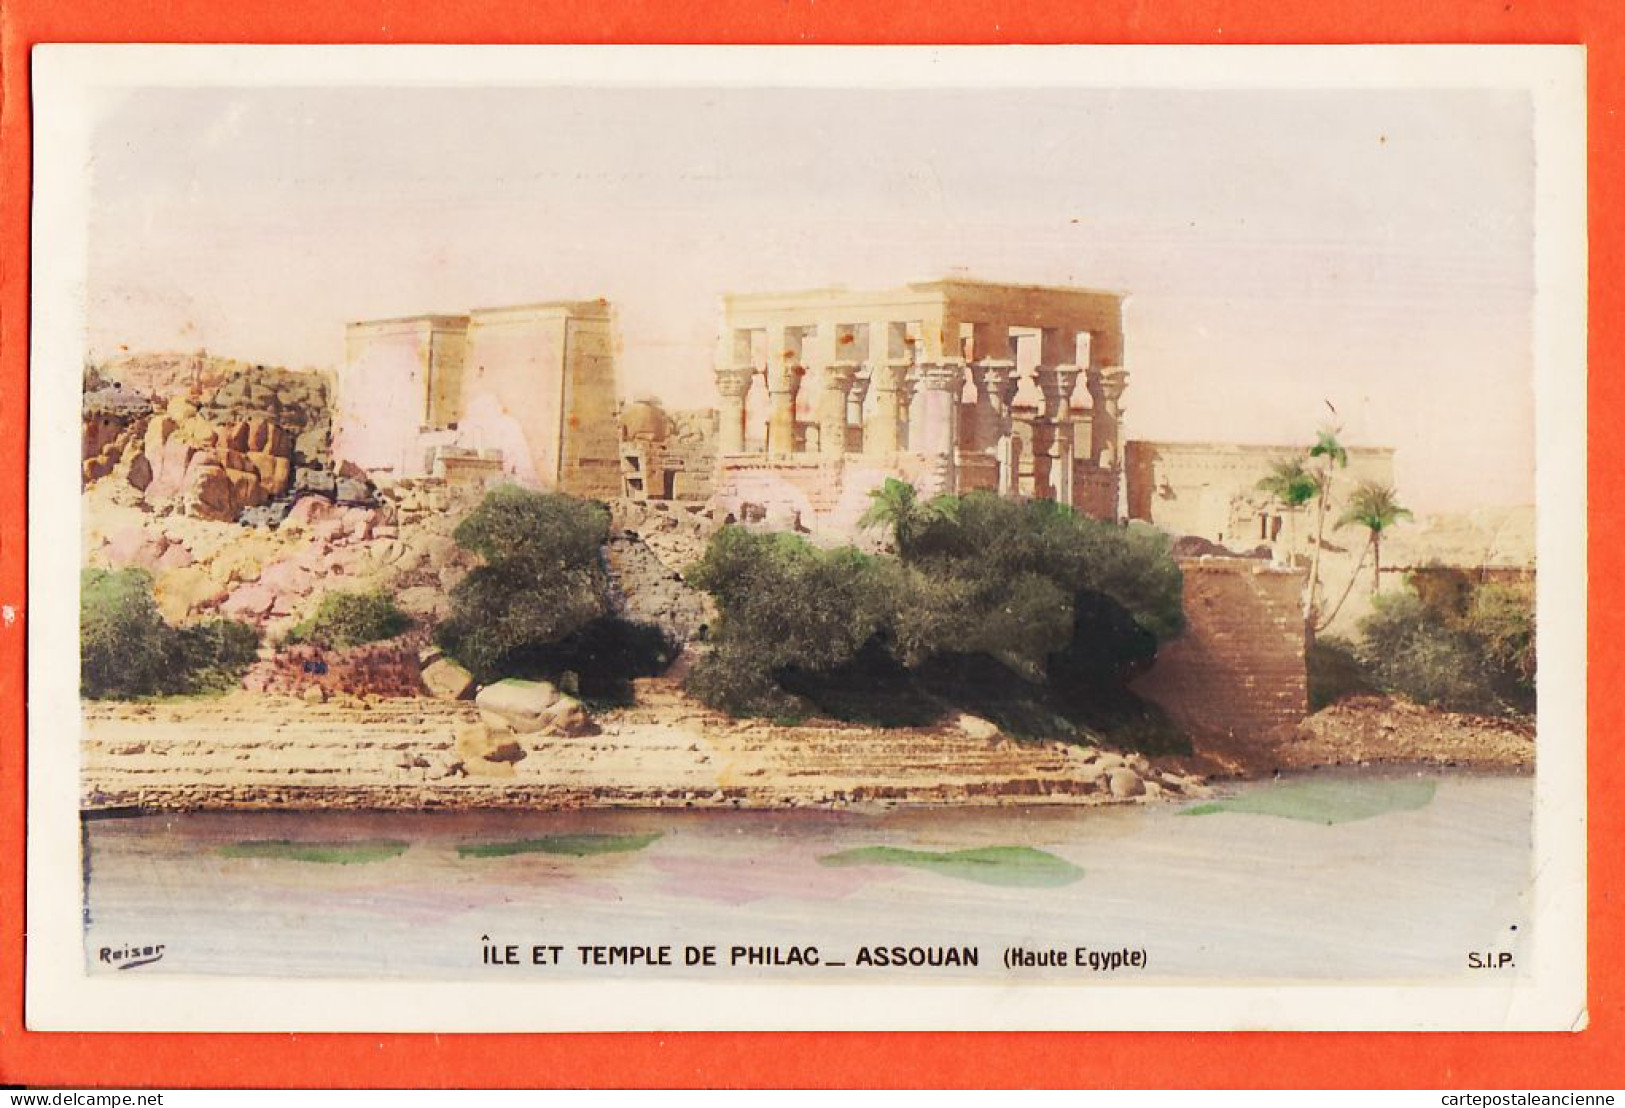 29577 / ⭐ ◉ ASSOUAN ILE Temple PHILAC (1) Ägypten Island Philae Kiosk Egypte Egypt 1905s Photo-Bromure REISER S.I.P - Asuán